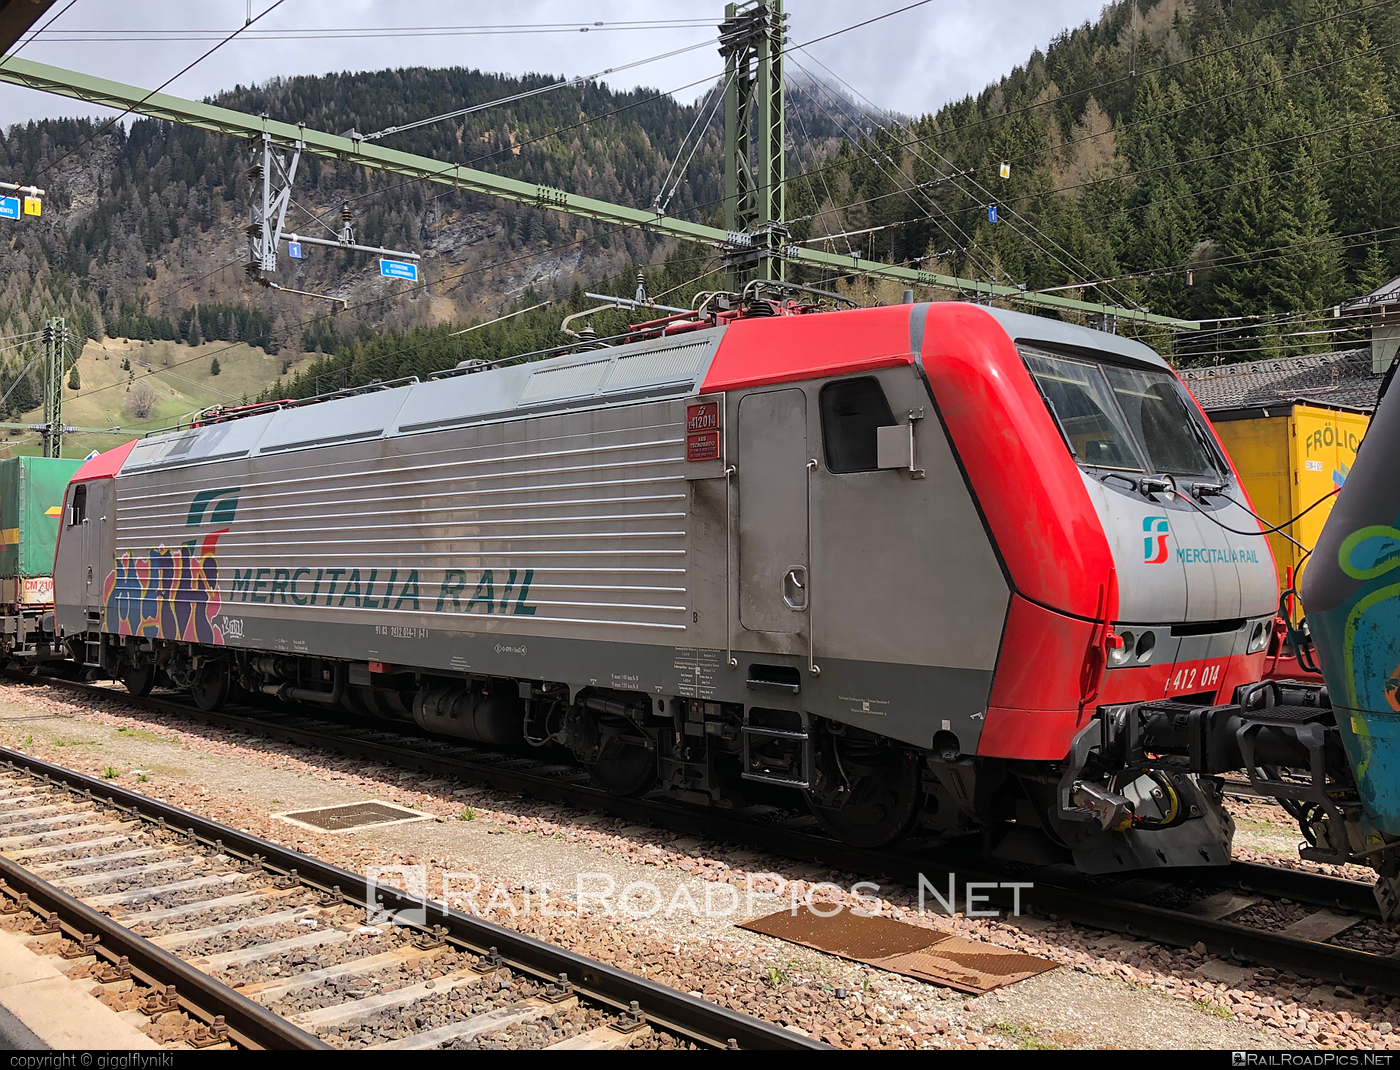 FS Class E.412 - E412 014 operated by Mercitalia Rail S.r.l. #e412 #ferroviedellostato #fs #fsClassE412 #fsitaliane #graffiti #mercitalia #trenitalia #trenitaliaspa